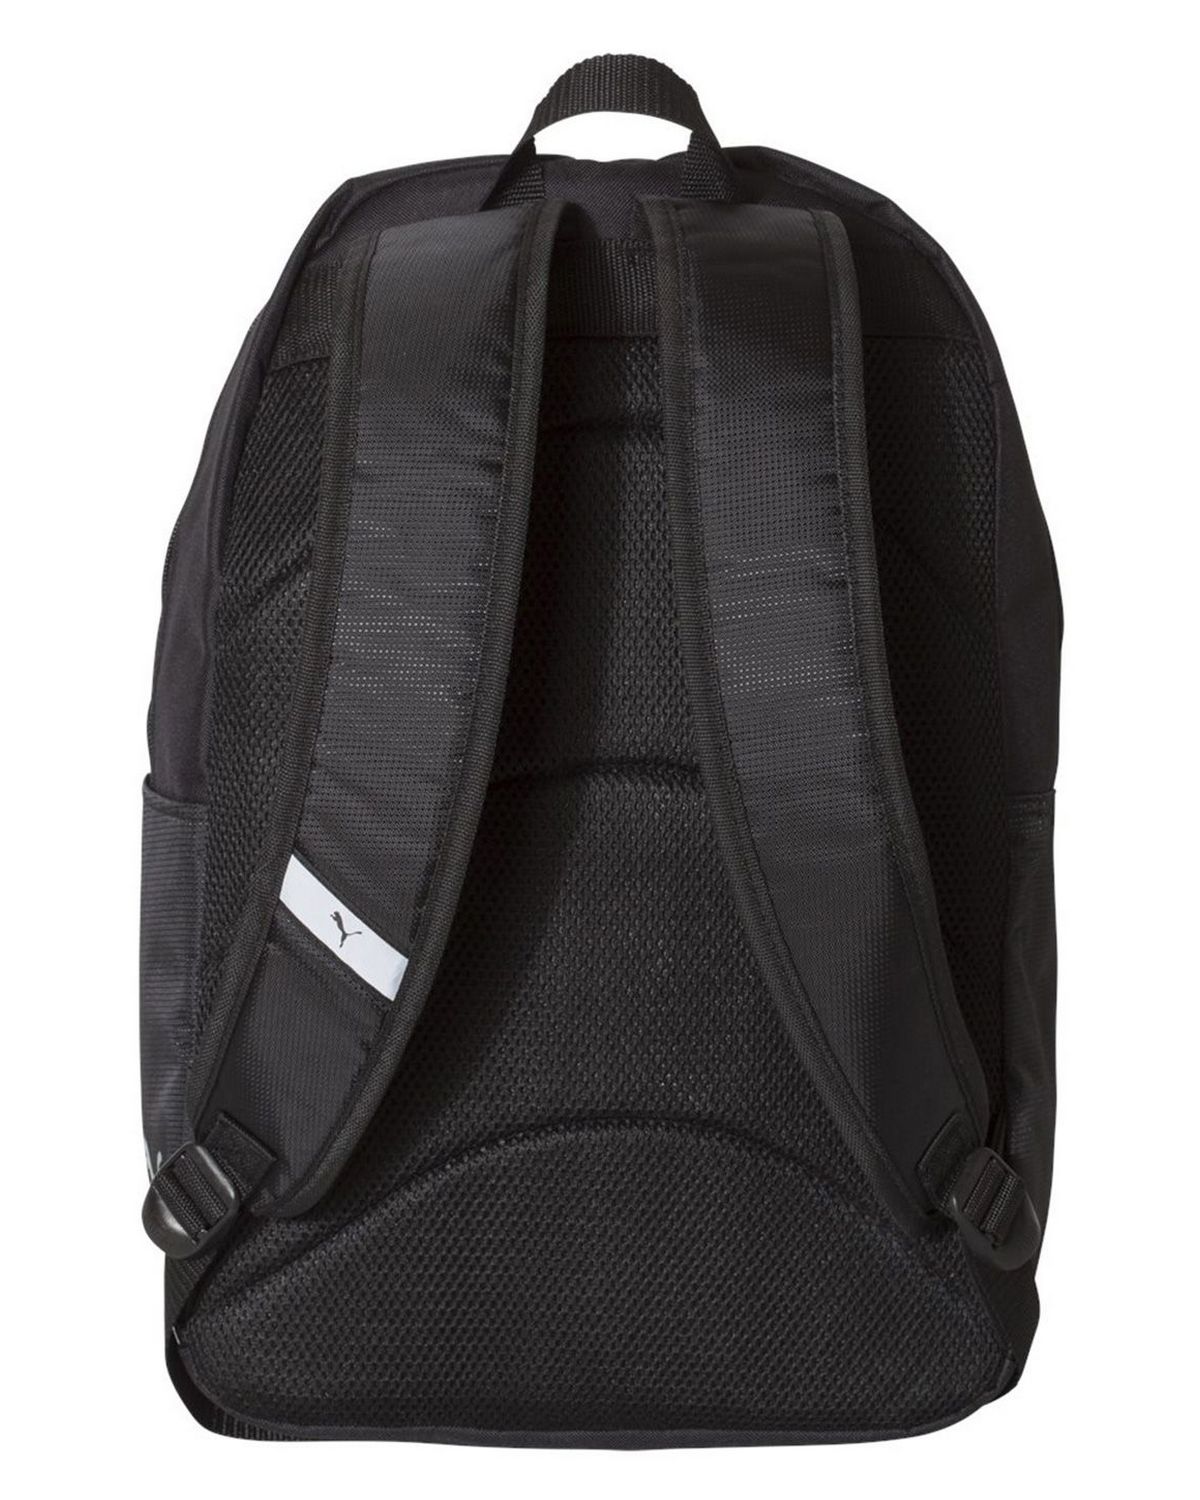 'Puma PSC1030 24L Backpack'